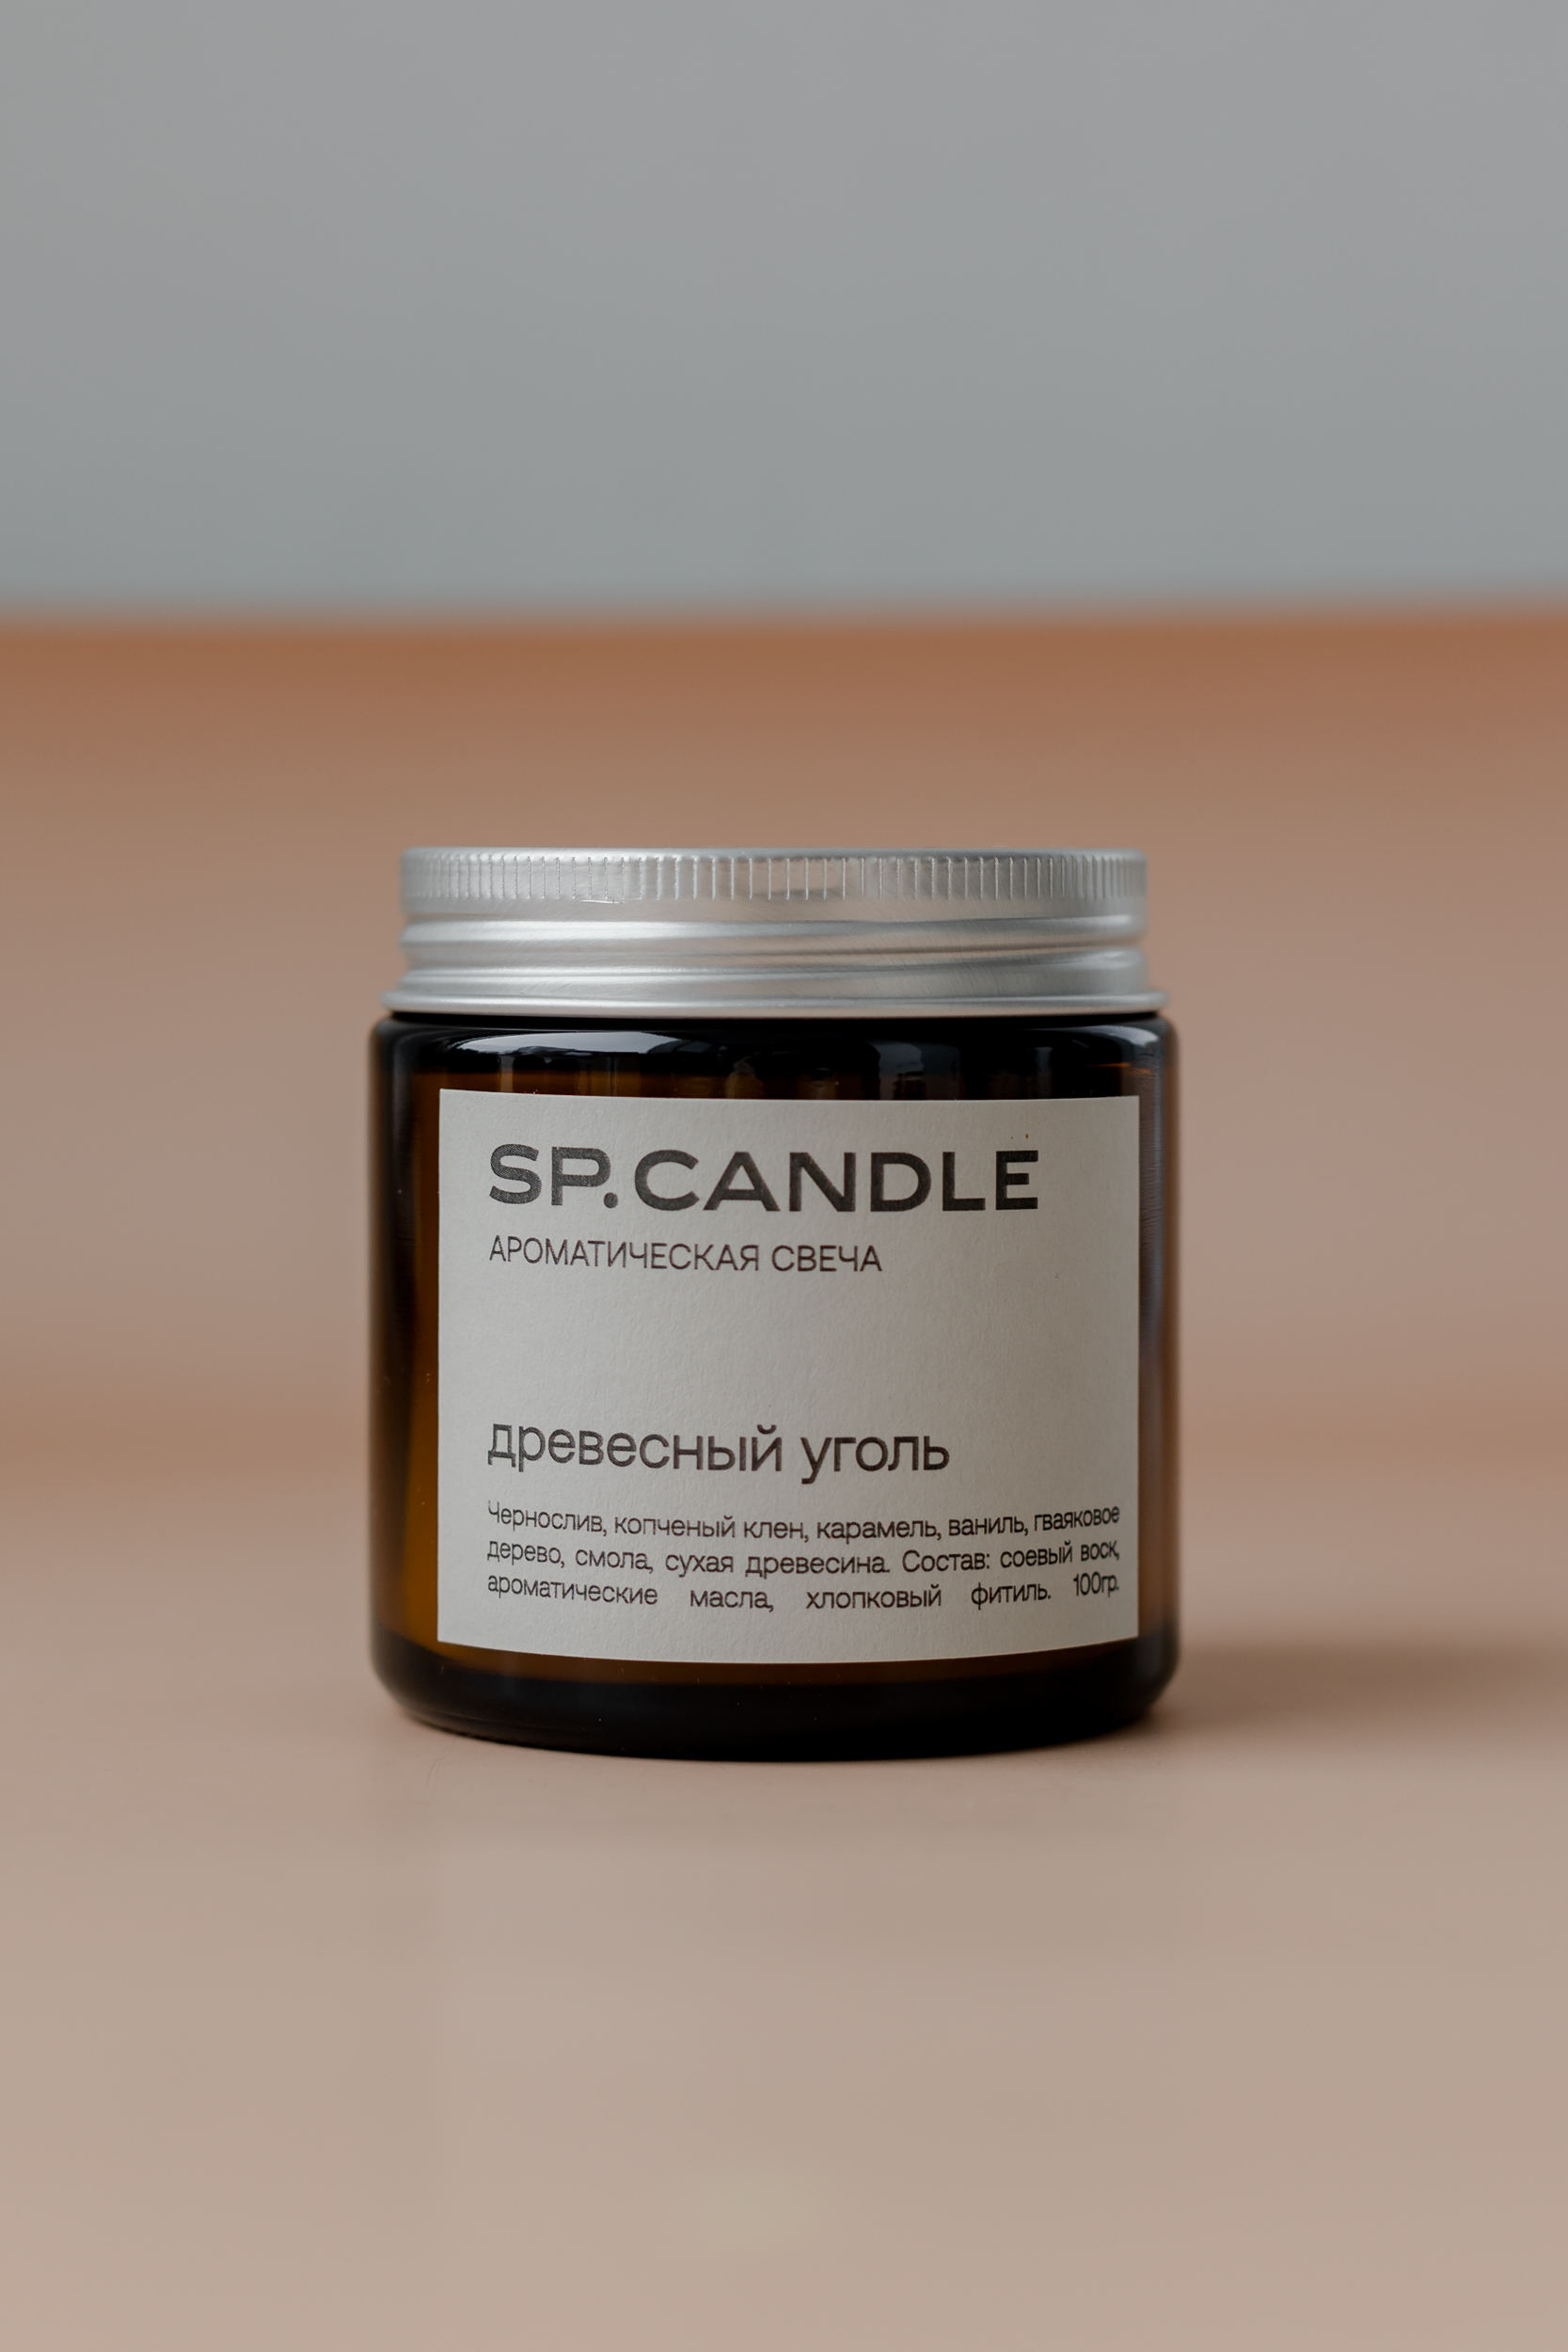 SP. CANDLE Ароматическая свеча Древесный уголь, 100г - фото 1